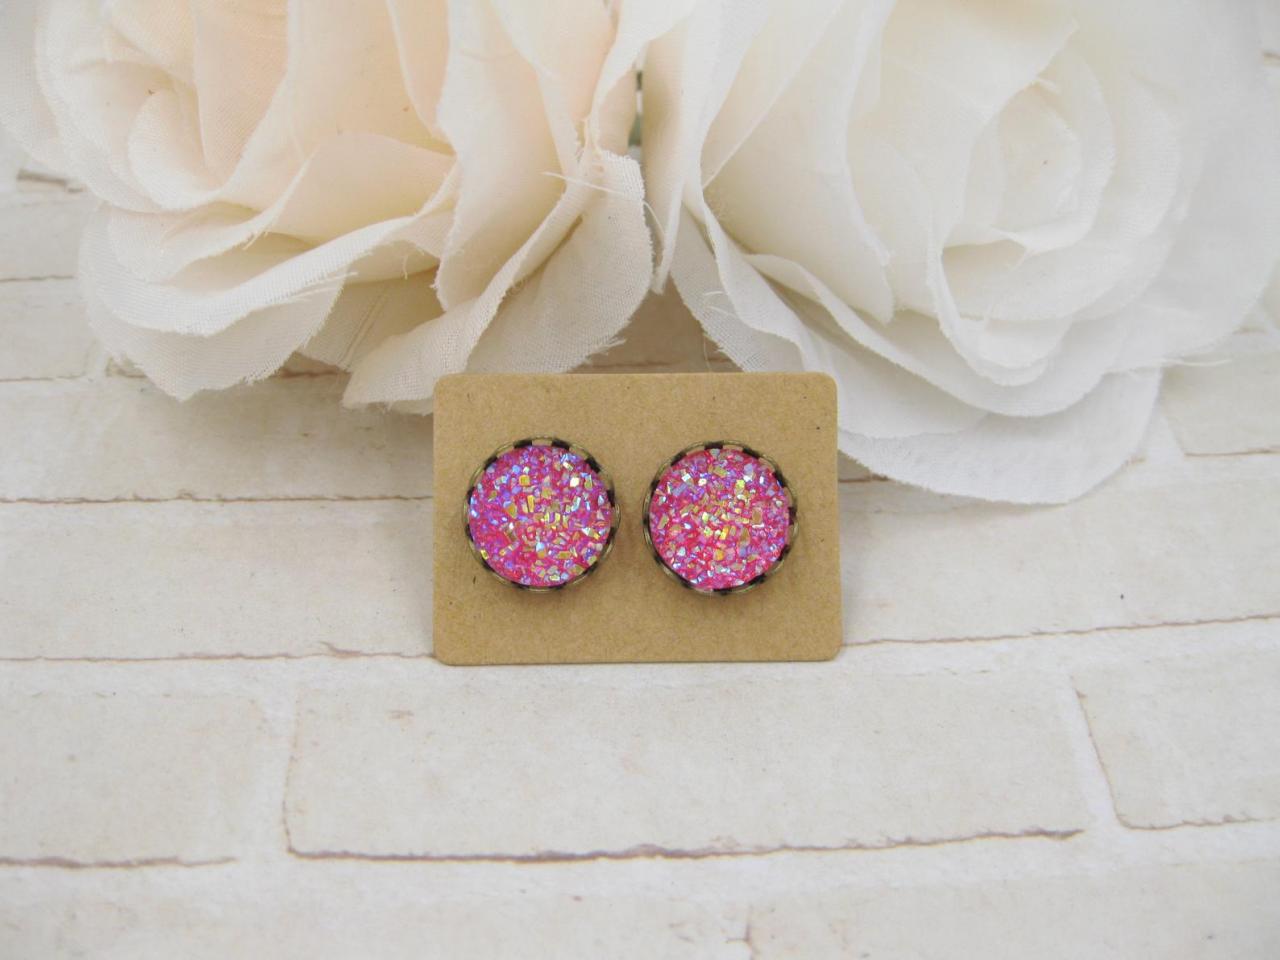 Pink Red Druzy Earrings - Iris Druzy Stud Earrings - Faux Druzy Post Earrings